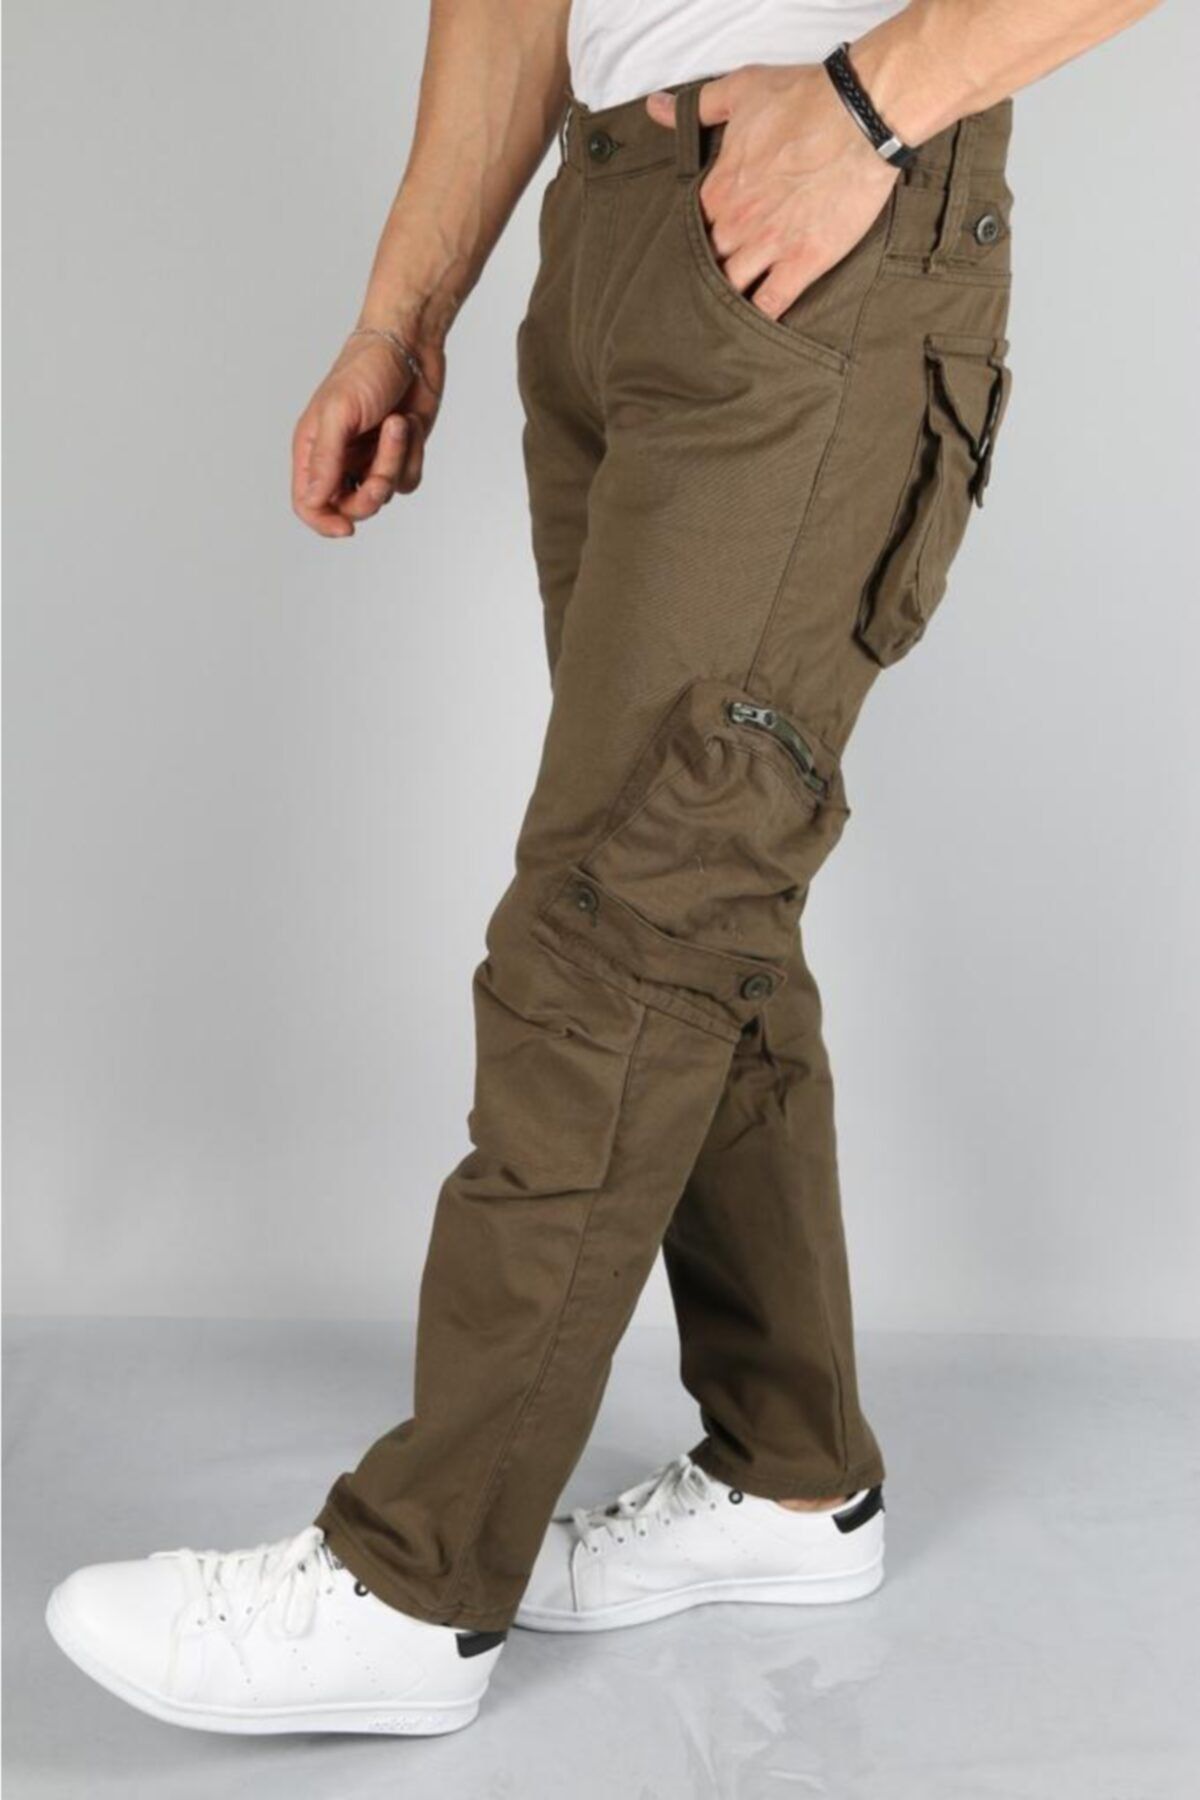 Hand Woven Mens Commando Pants- Black - Walmart.com